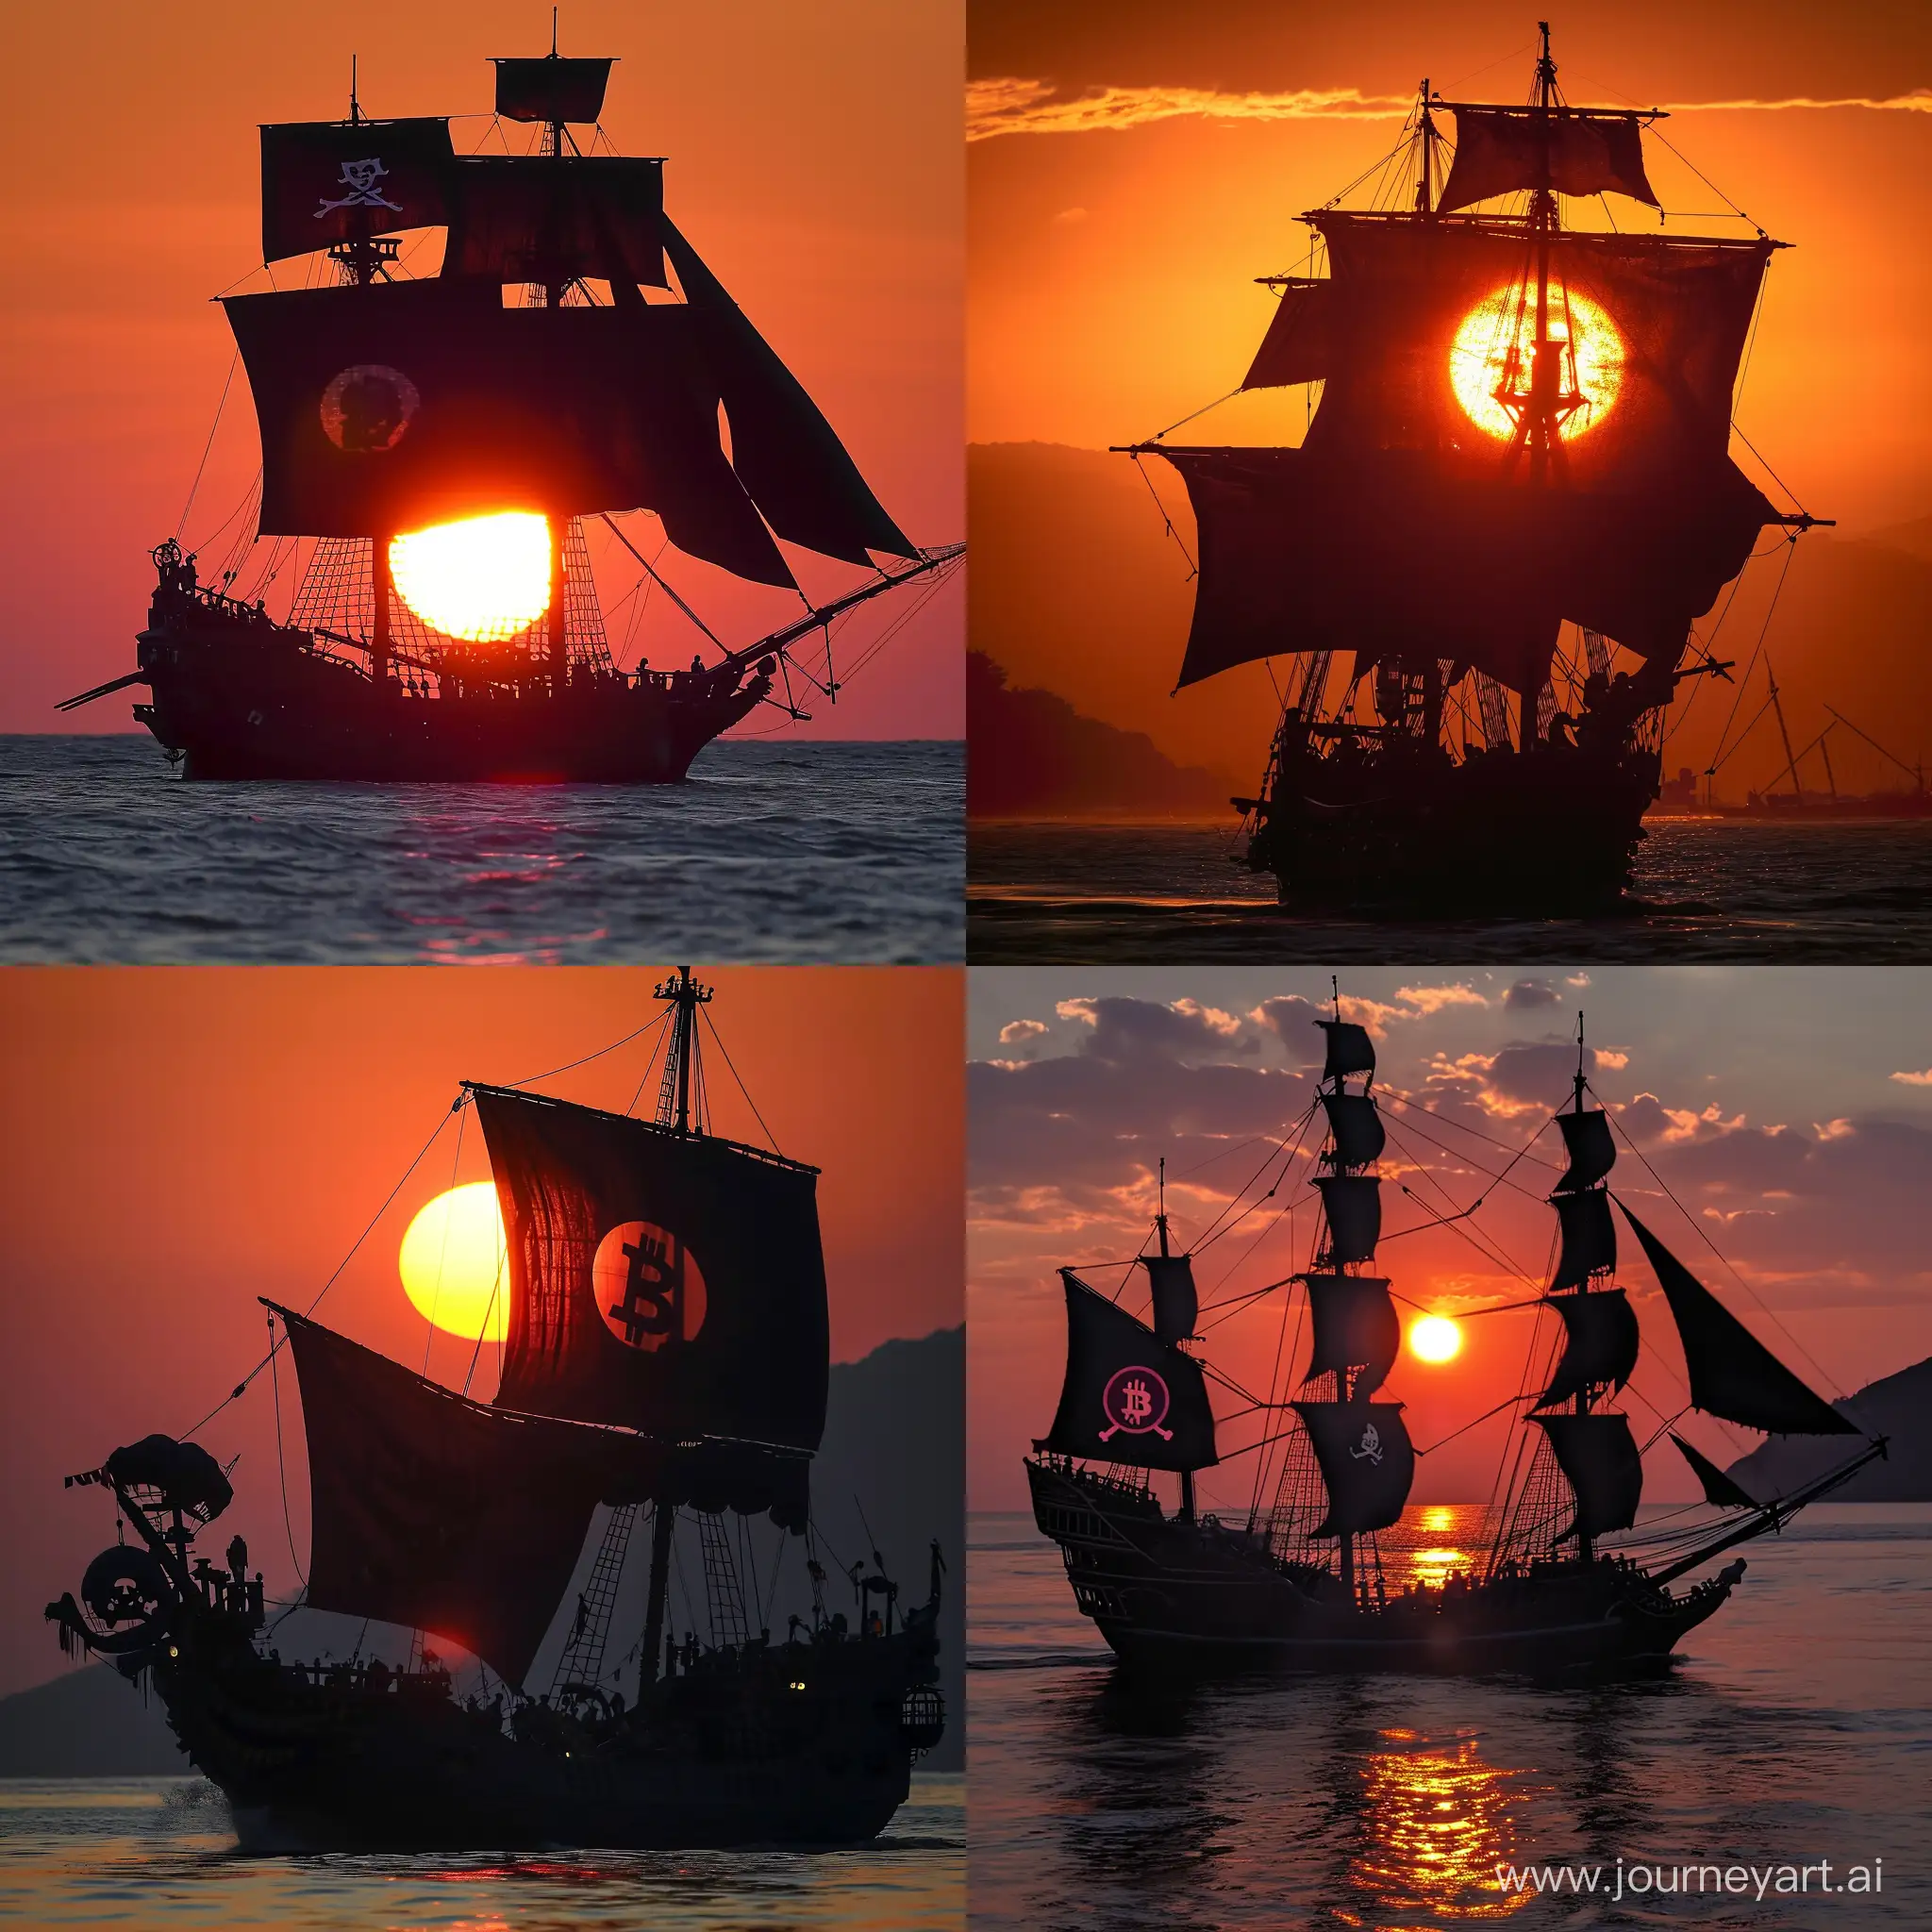 Sunset, pirate ship, black sail, Bitcoin replacing the sun